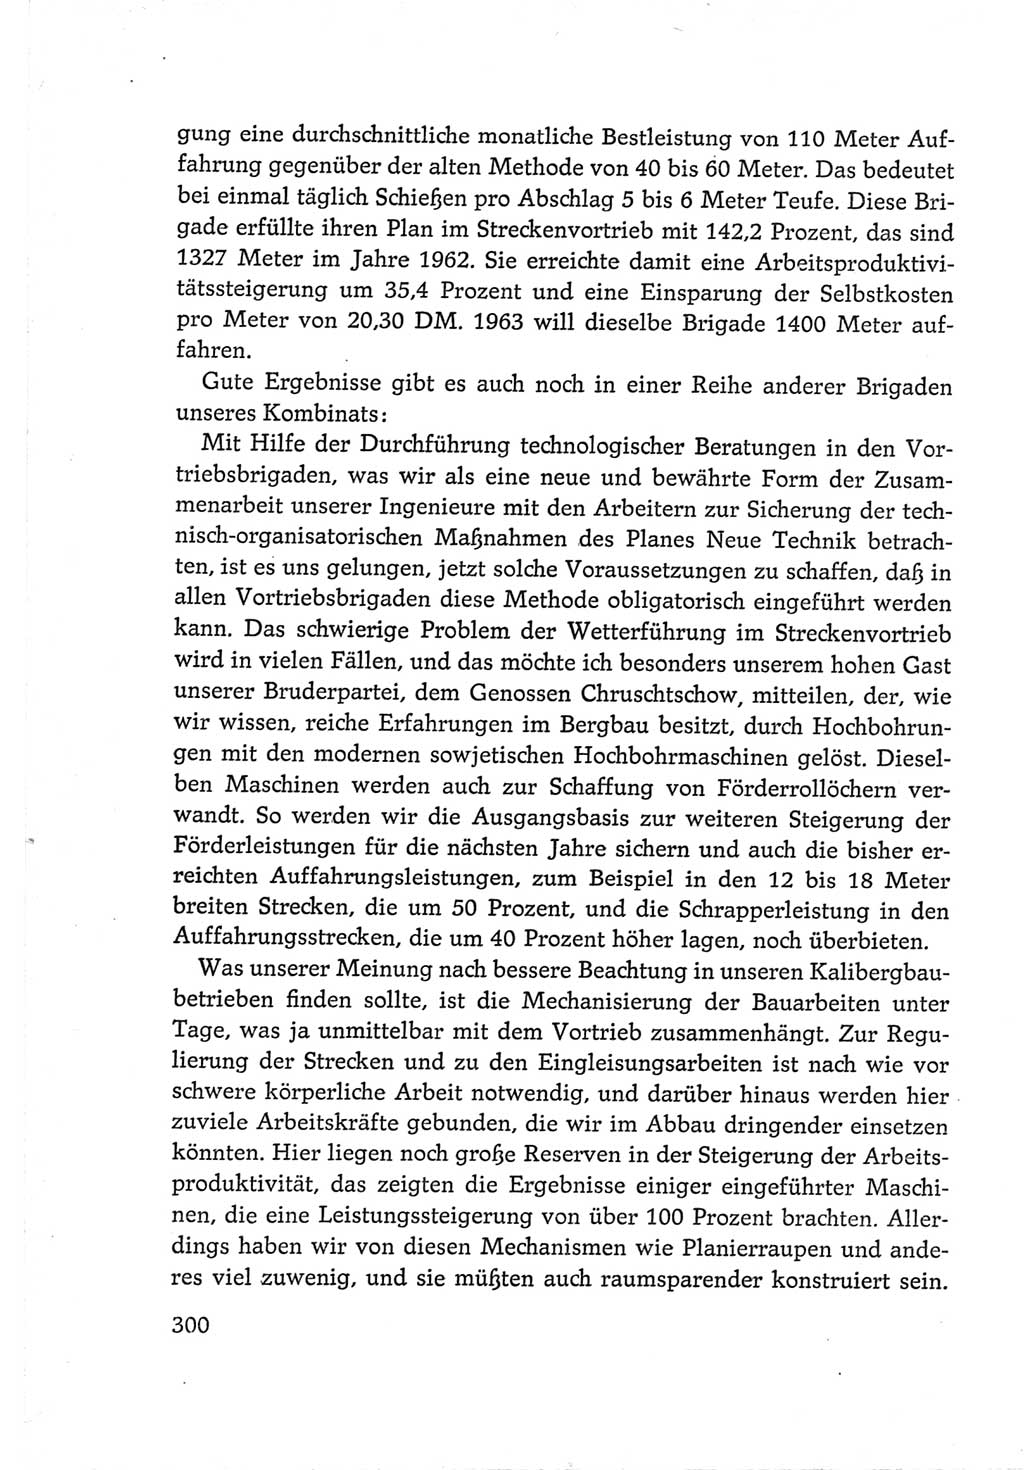 Protokoll der Verhandlungen des Ⅵ. Parteitages der Sozialistischen Einheitspartei Deutschlands (SED) [Deutsche Demokratische Republik (DDR)] 1963, Band Ⅲ, Seite 300 (Prot. Verh. Ⅵ. PT SED DDR 1963, Bd. Ⅲ, S. 300)